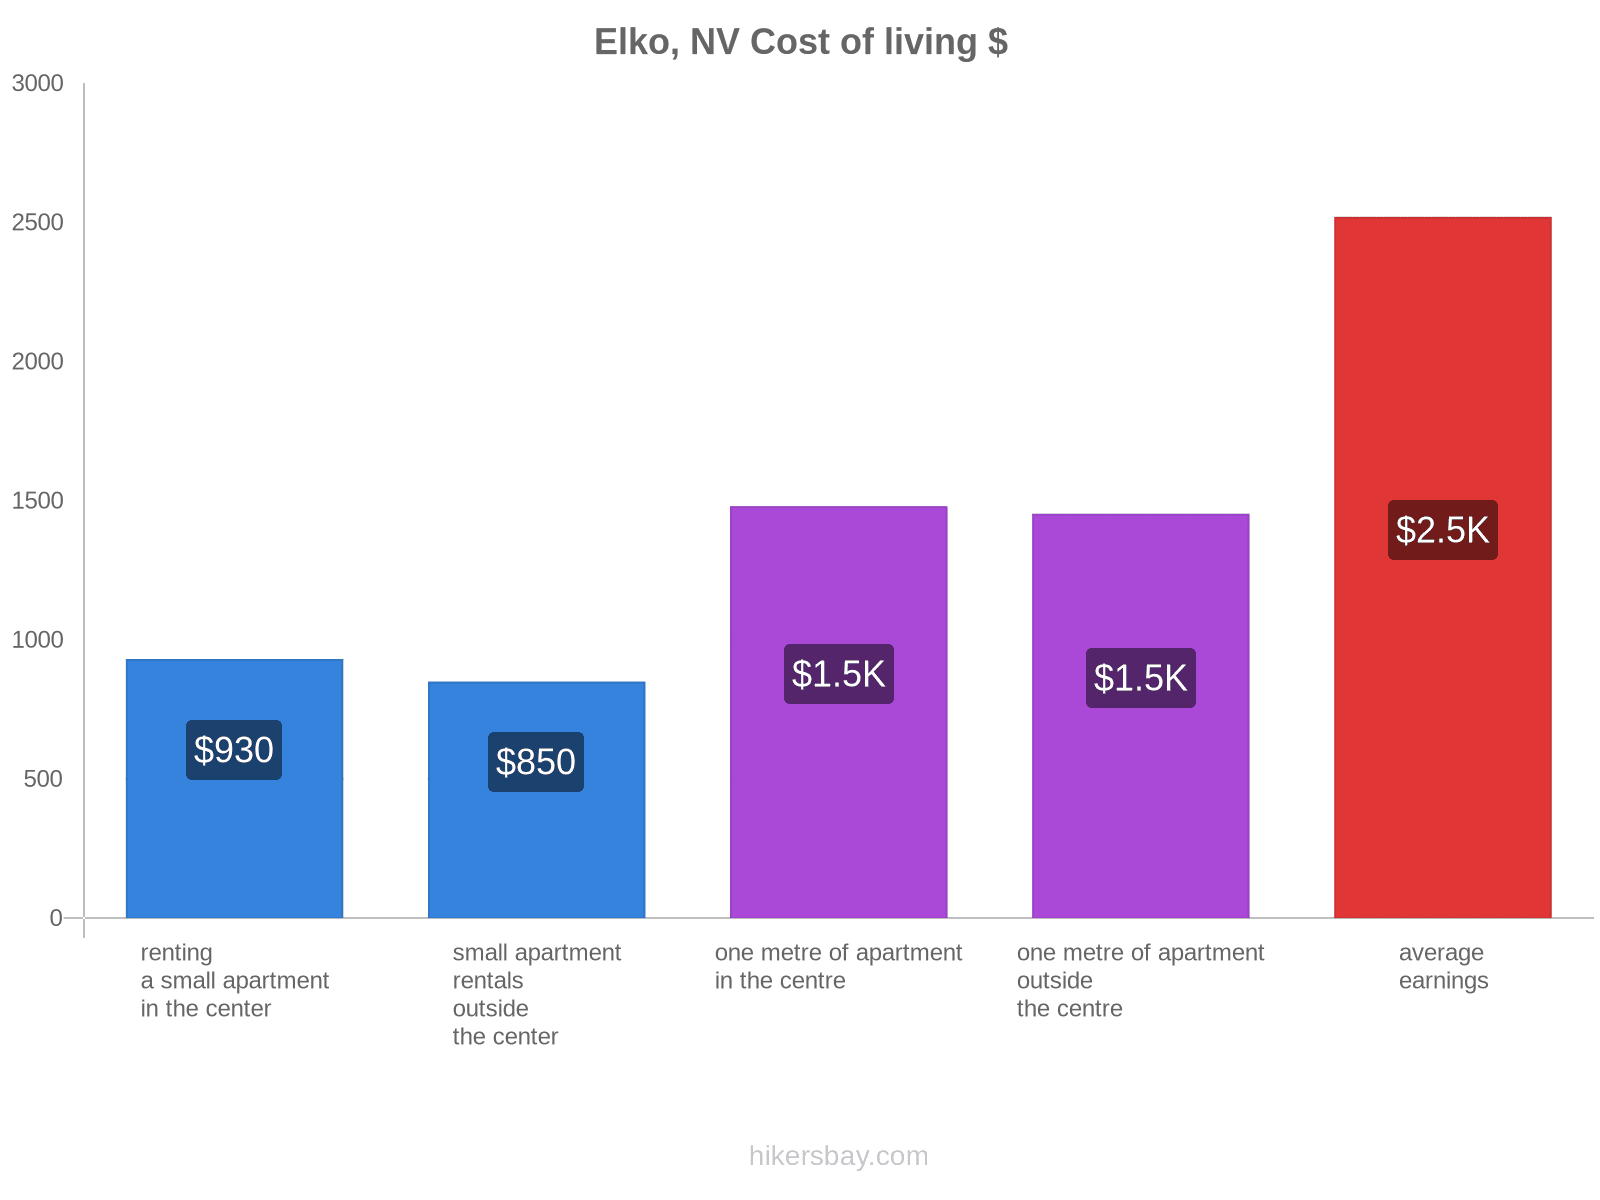 Elko, NV cost of living hikersbay.com